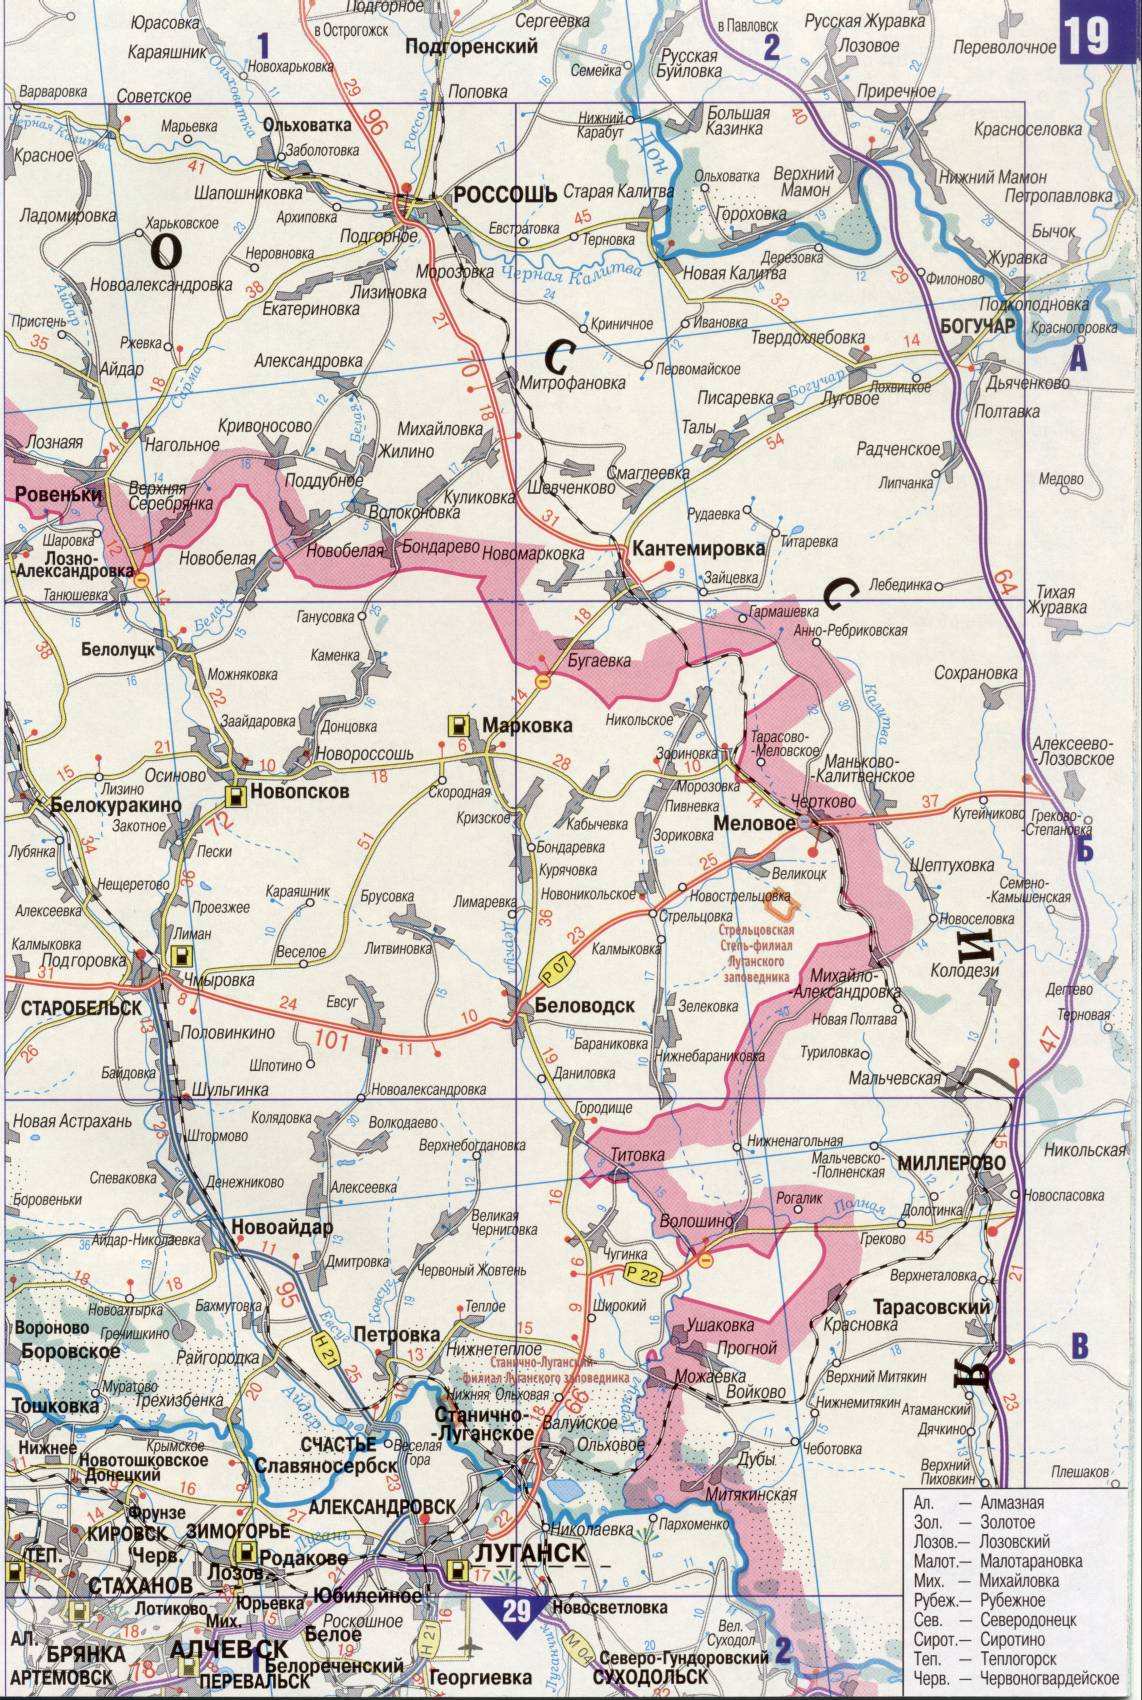 Karte der Ukraine. Detaillierte Straßenkarte der Ukraine avtomobilnog Satin. kostenlos herunterladen, J1